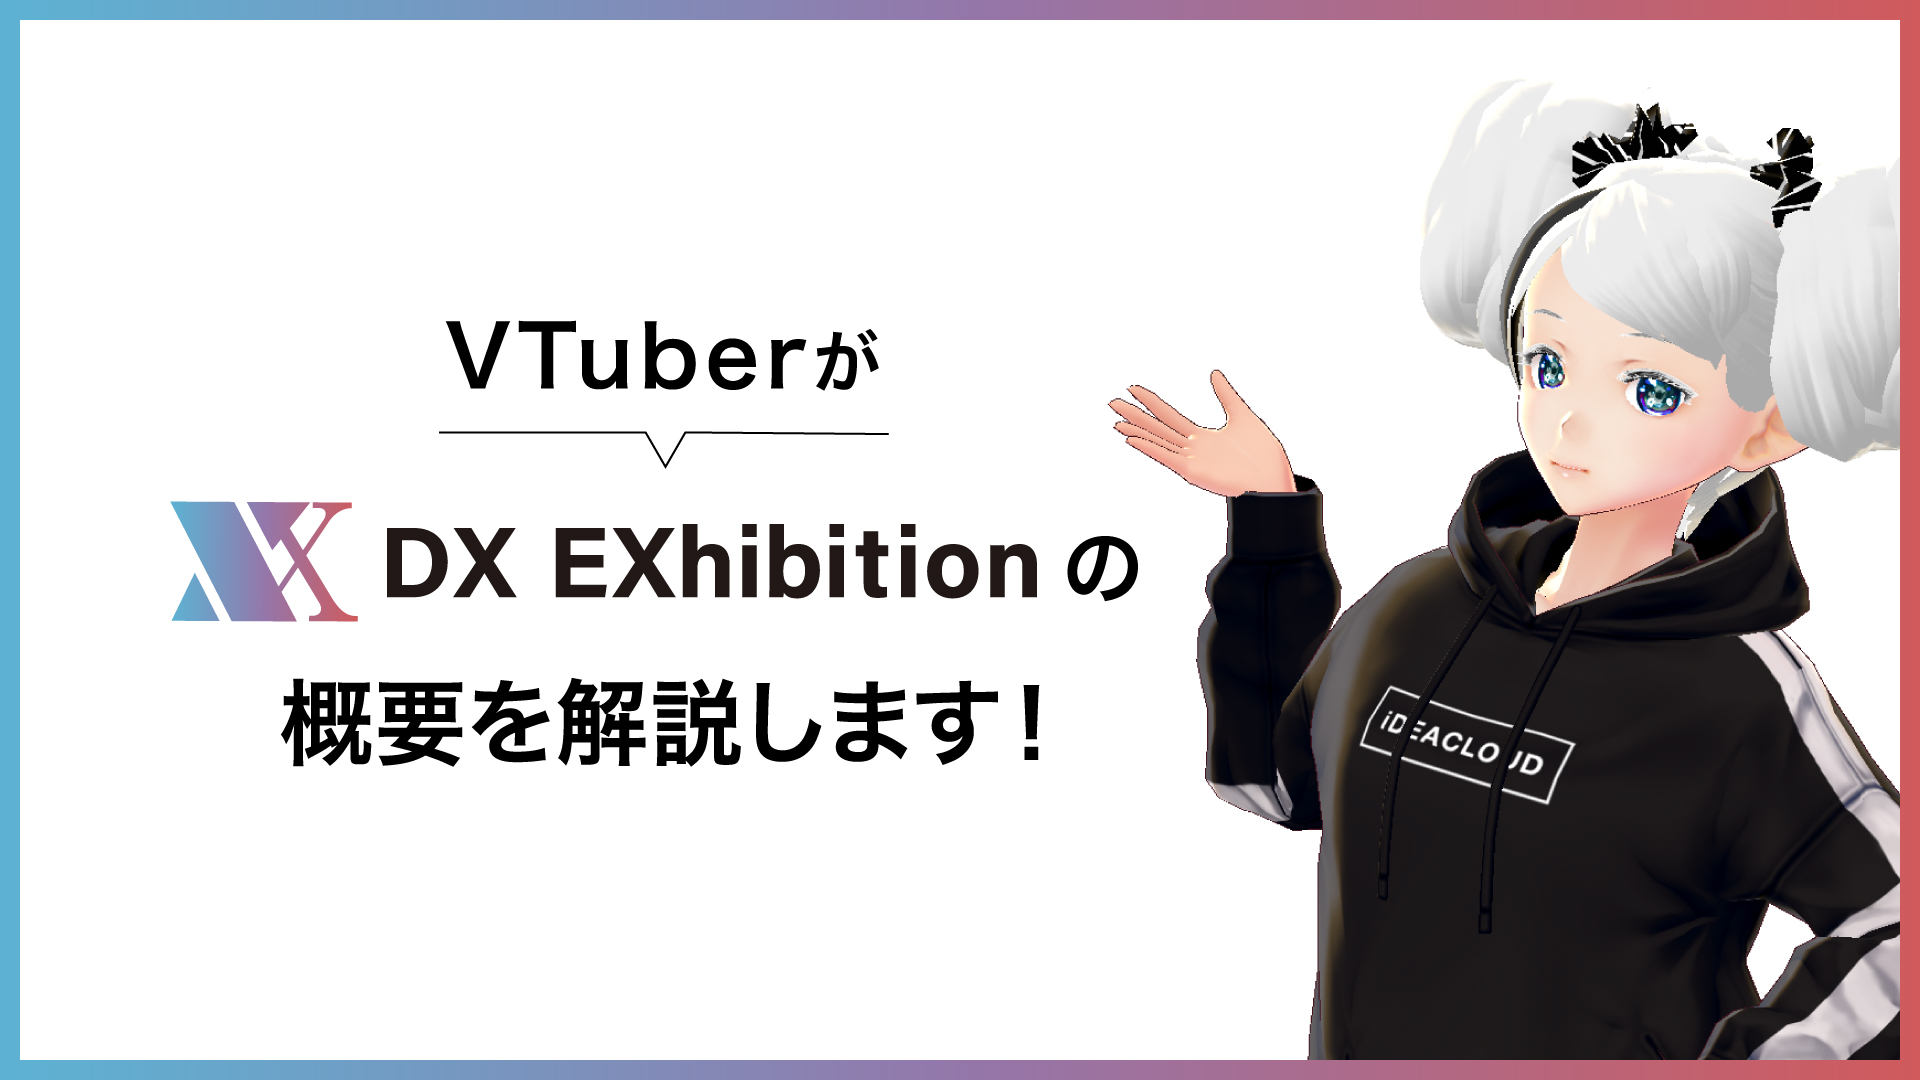 リアルな展示会をバーチャルで開催できる「DX EXhibition」導入検討に役立つ、VTuberを利用したバーチャル展示会説明動画を公開。